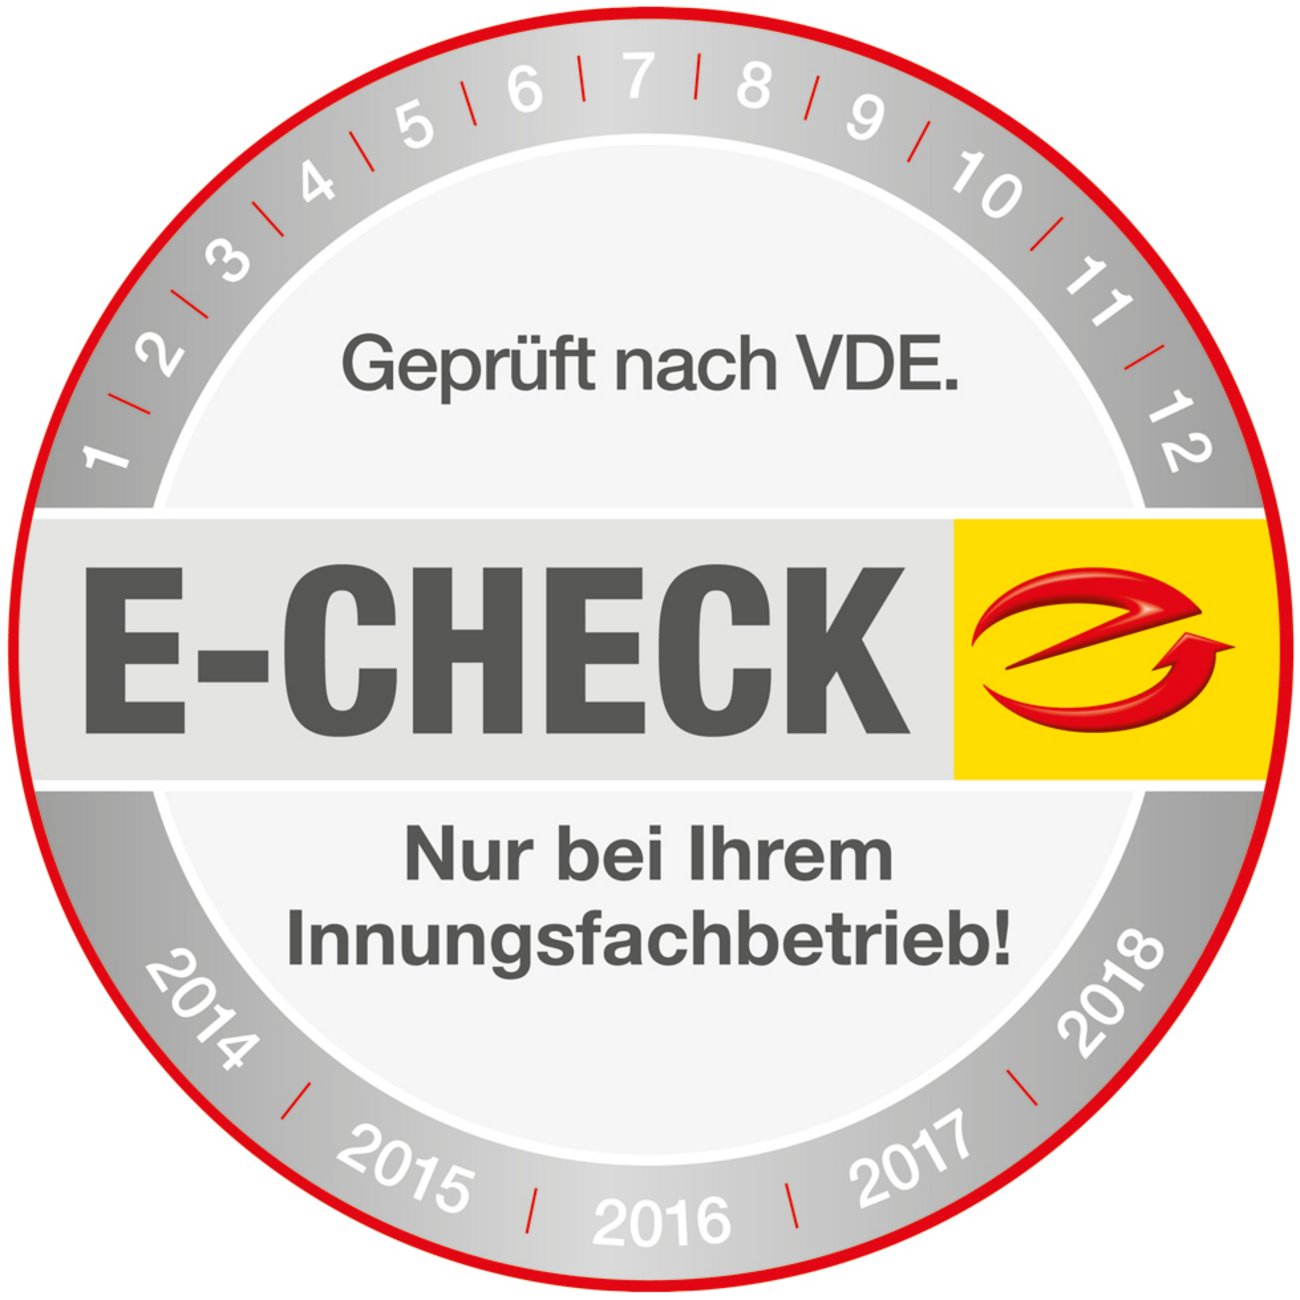 Der E-Check bei Harald Merget Elektrotechnik GmbH in Laufach